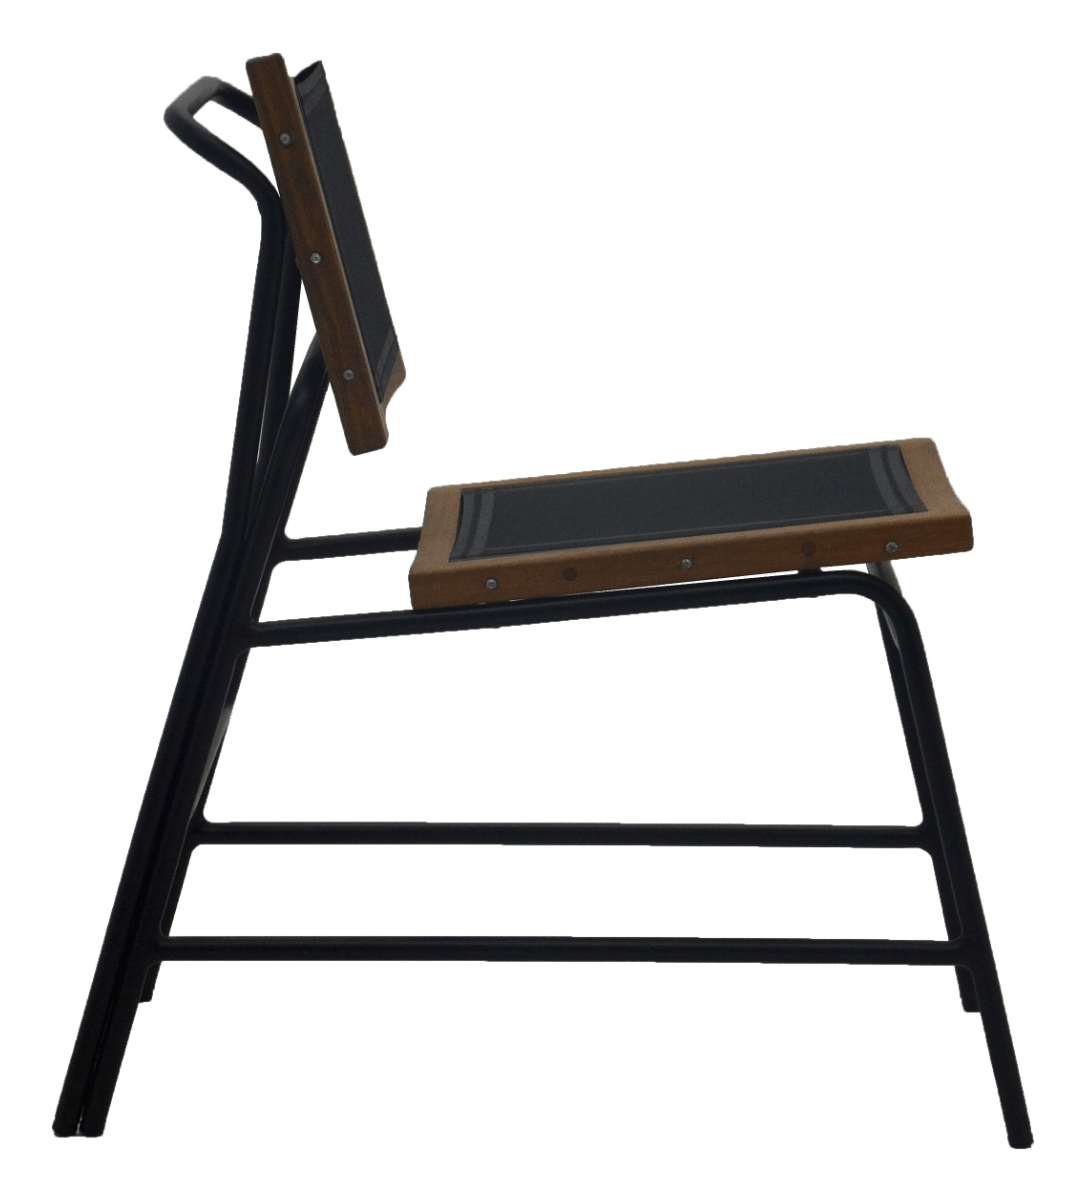 Cadeira Grilo Alumino c Detalhes em Madeira e Sling CAIL0101 1200px ld01 2 deezign